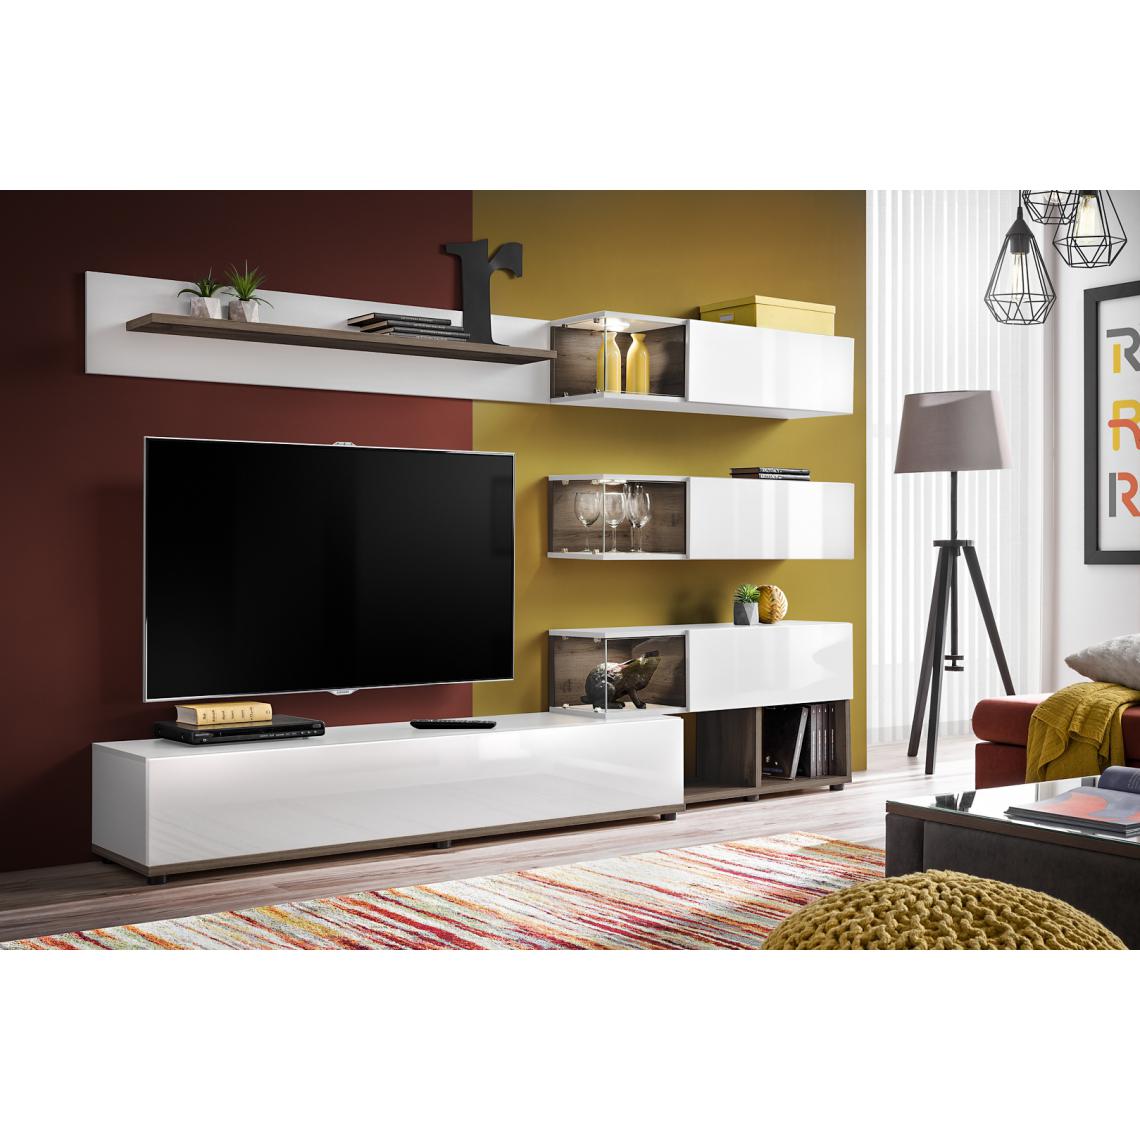 Dusine - Composition meubles TV FOX BLANC laqué et bois avec LED 240 cm - Meubles TV, Hi-Fi